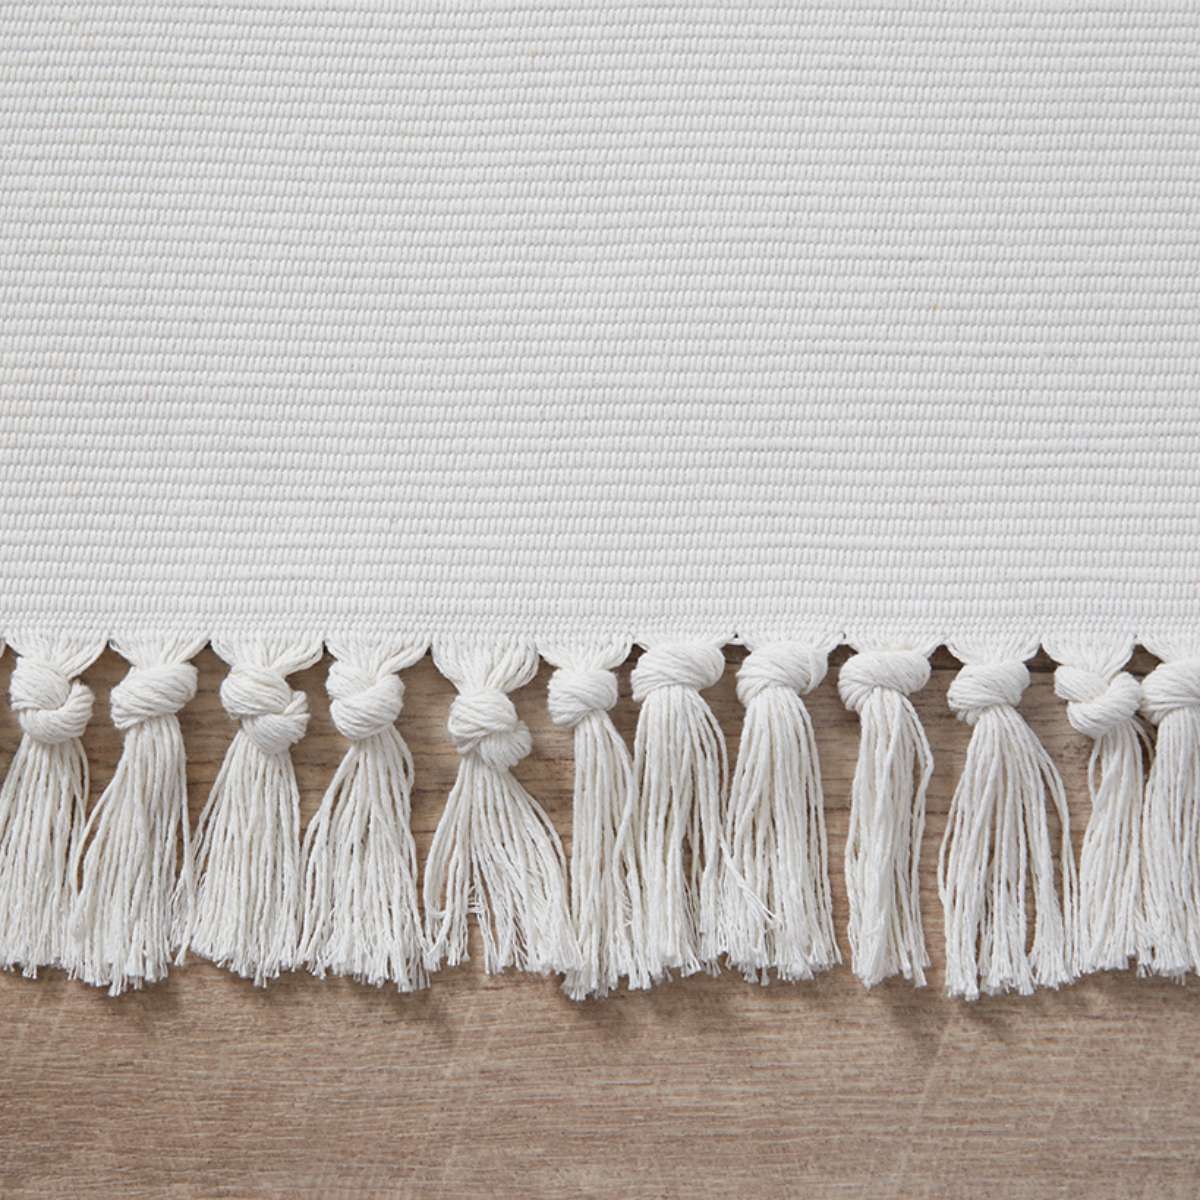 Kobie Cotton Blend Striped Floor Rug - Extra Large